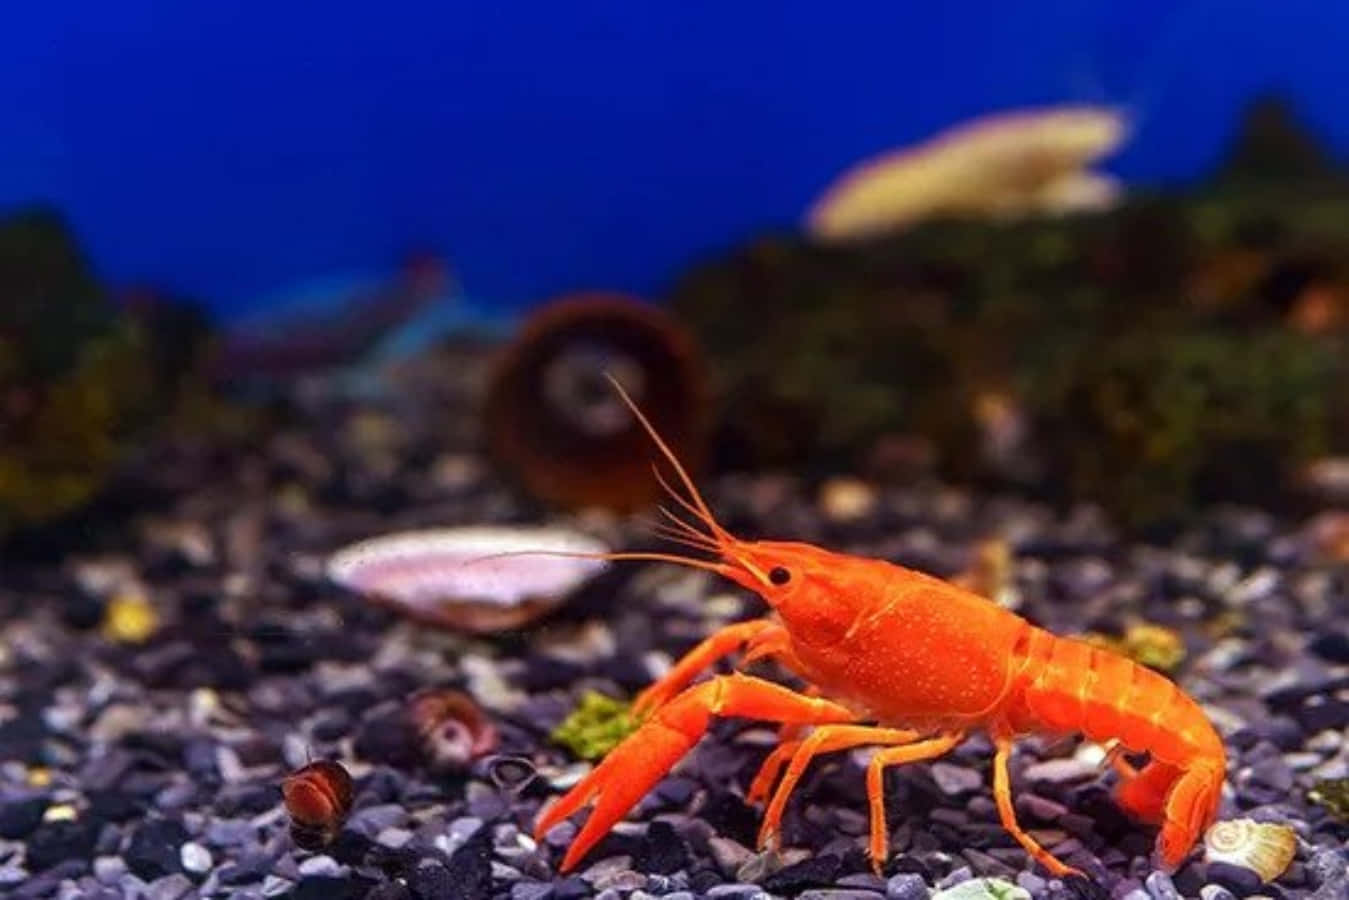 Vibrant Orange Crayfish Aquarium Wallpaper